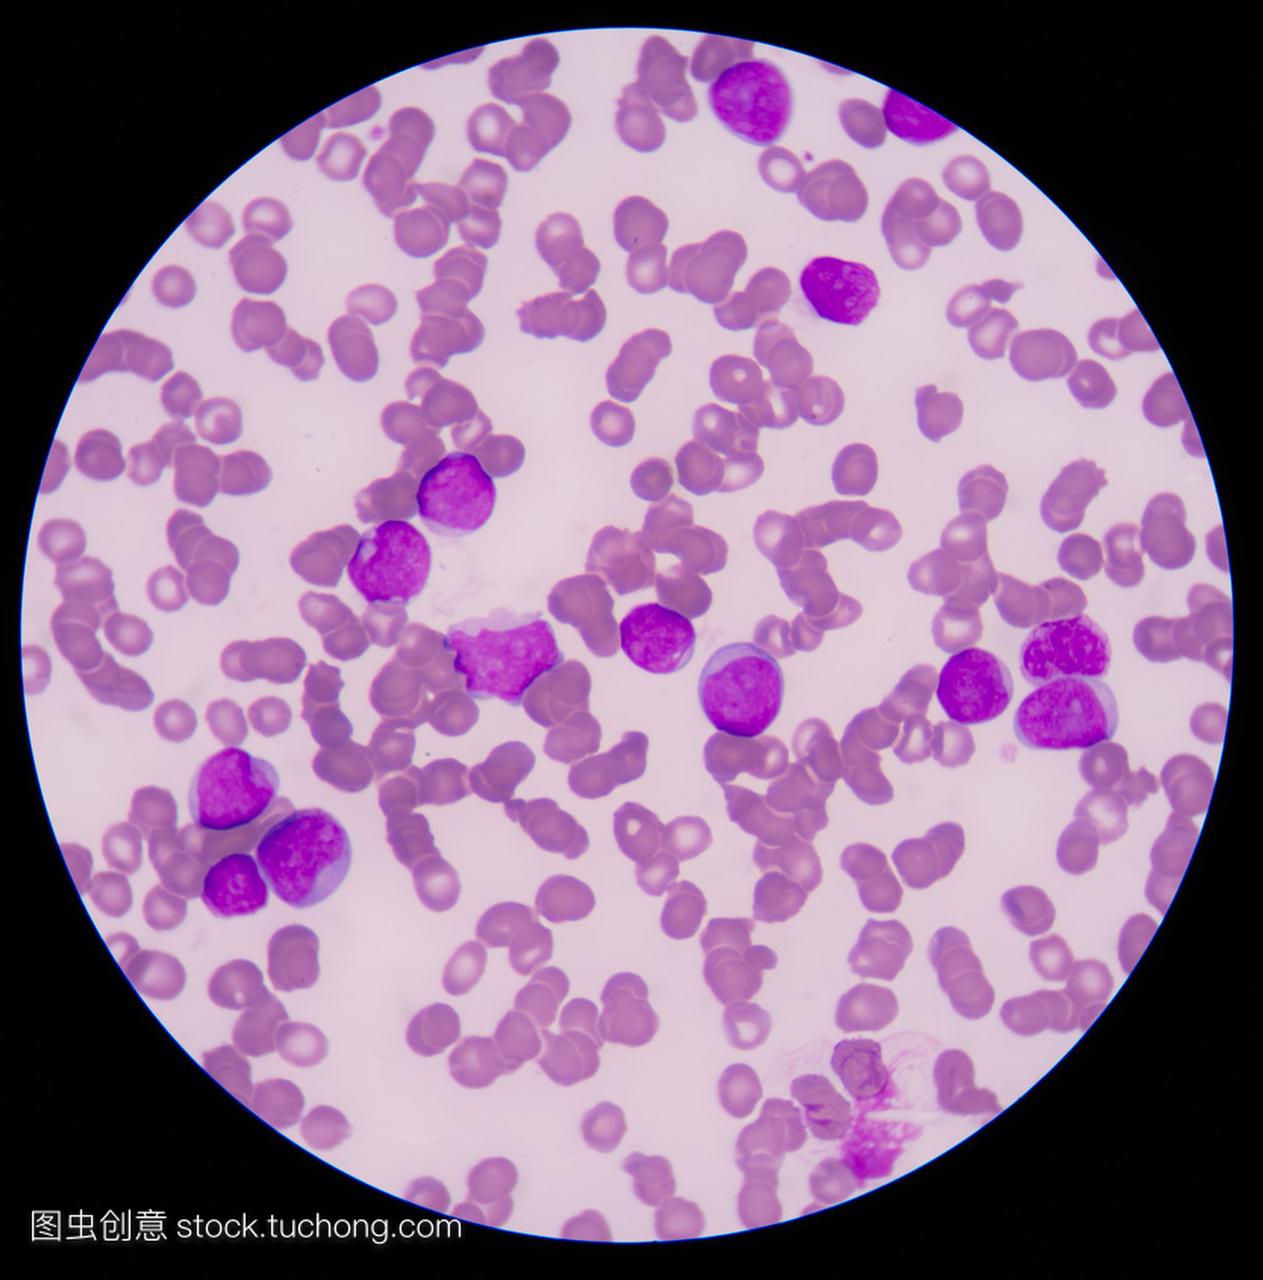 血液癌症。涂片显示大量的癌症白血病 cel